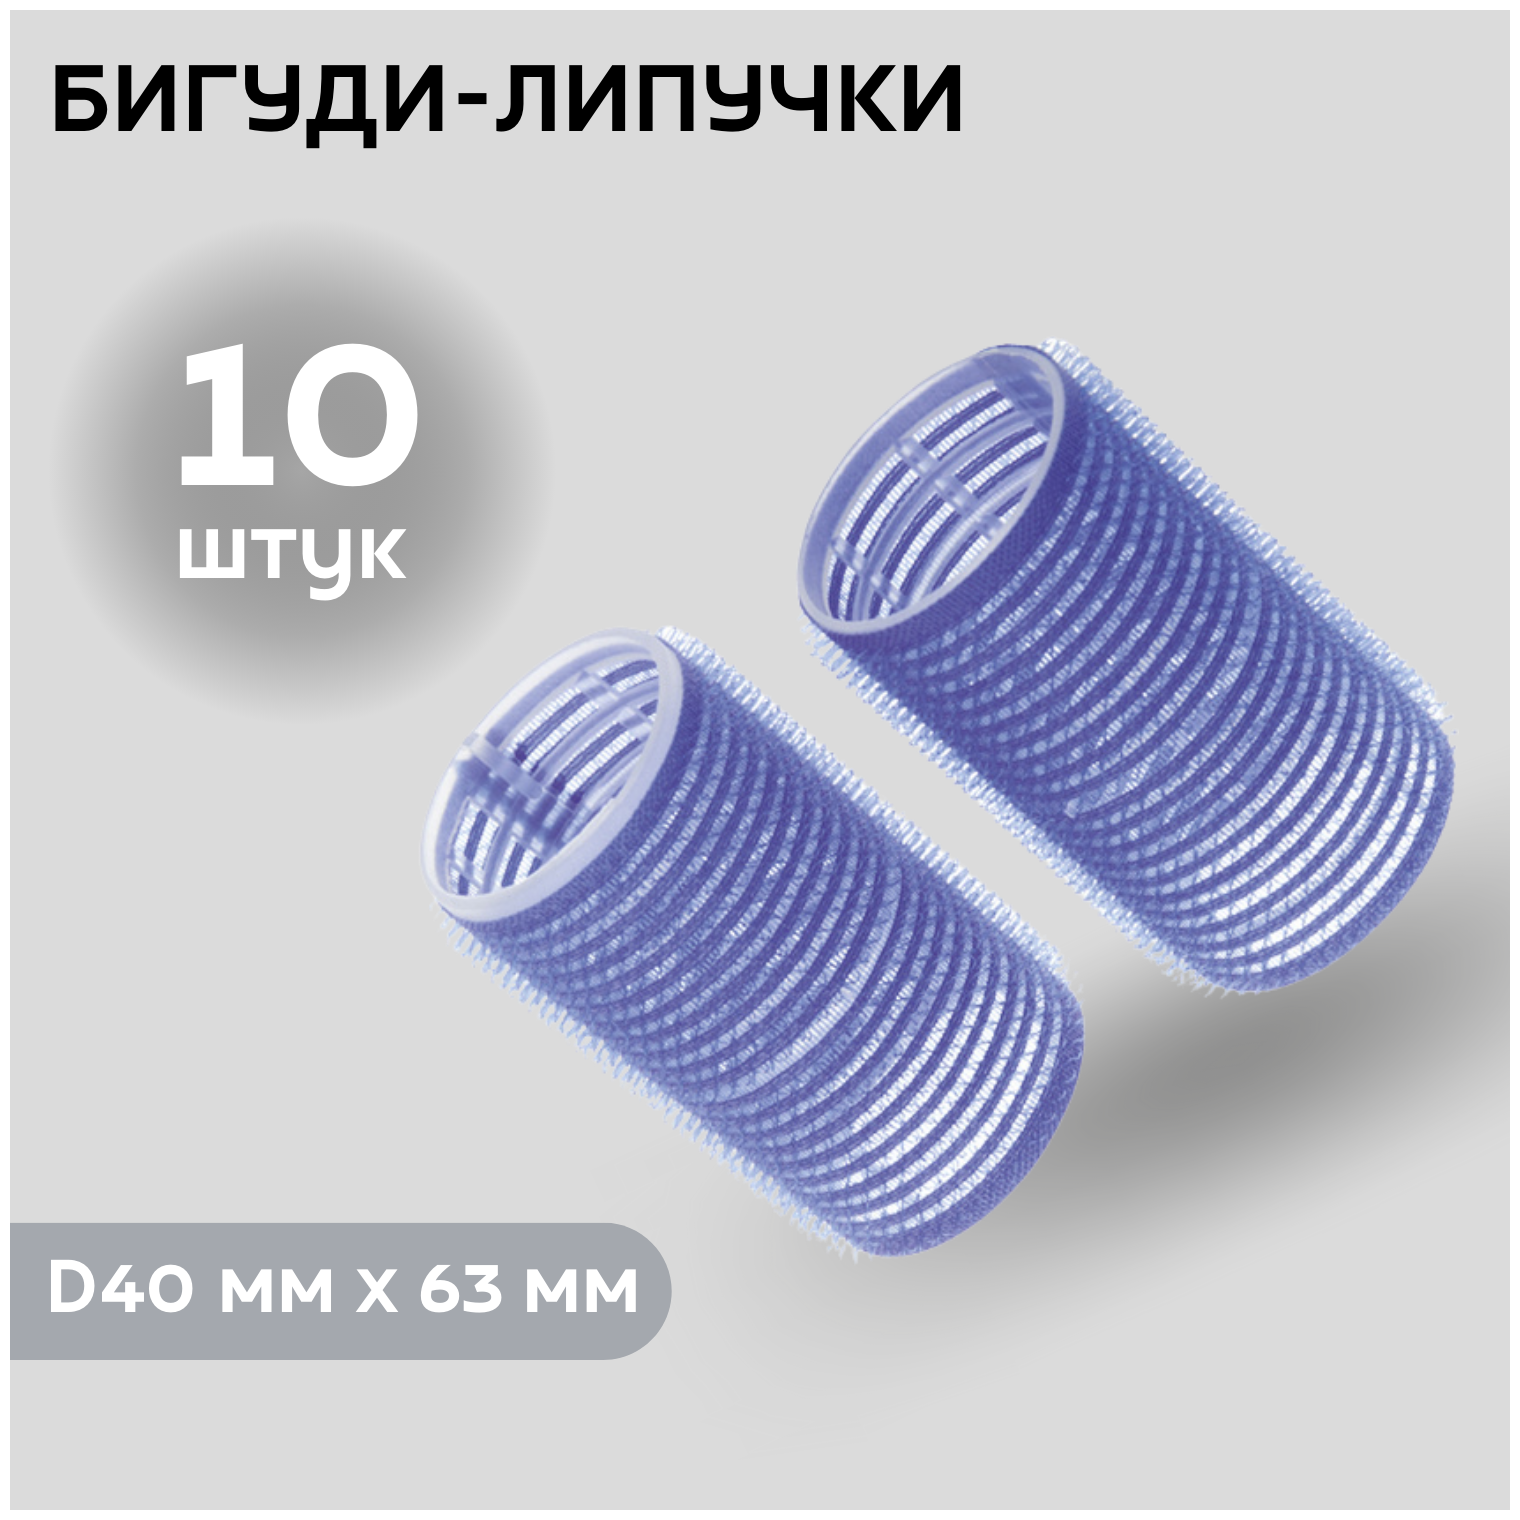 DEWAL BEAUTY Бигуди-липучки DBL40, синие, d 40 мм x 63 мм, 10 шт. (DBL40)